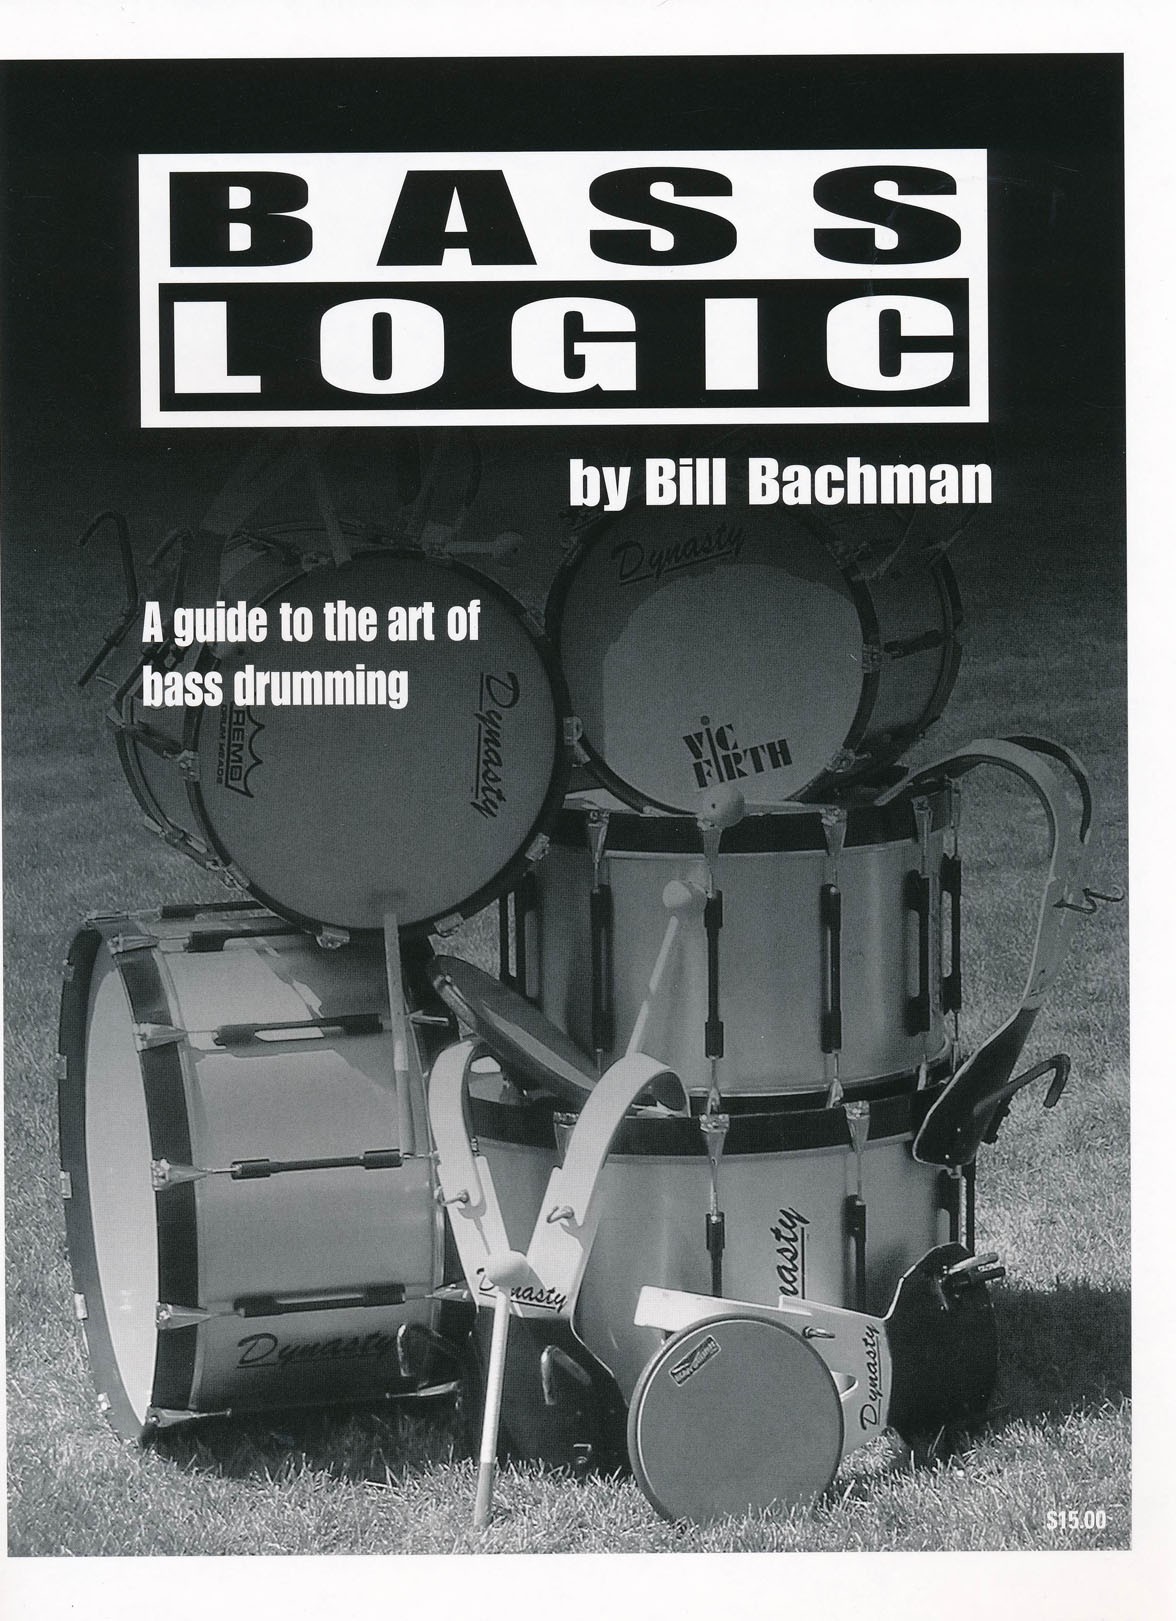 Bass Logic by Bill Bachman